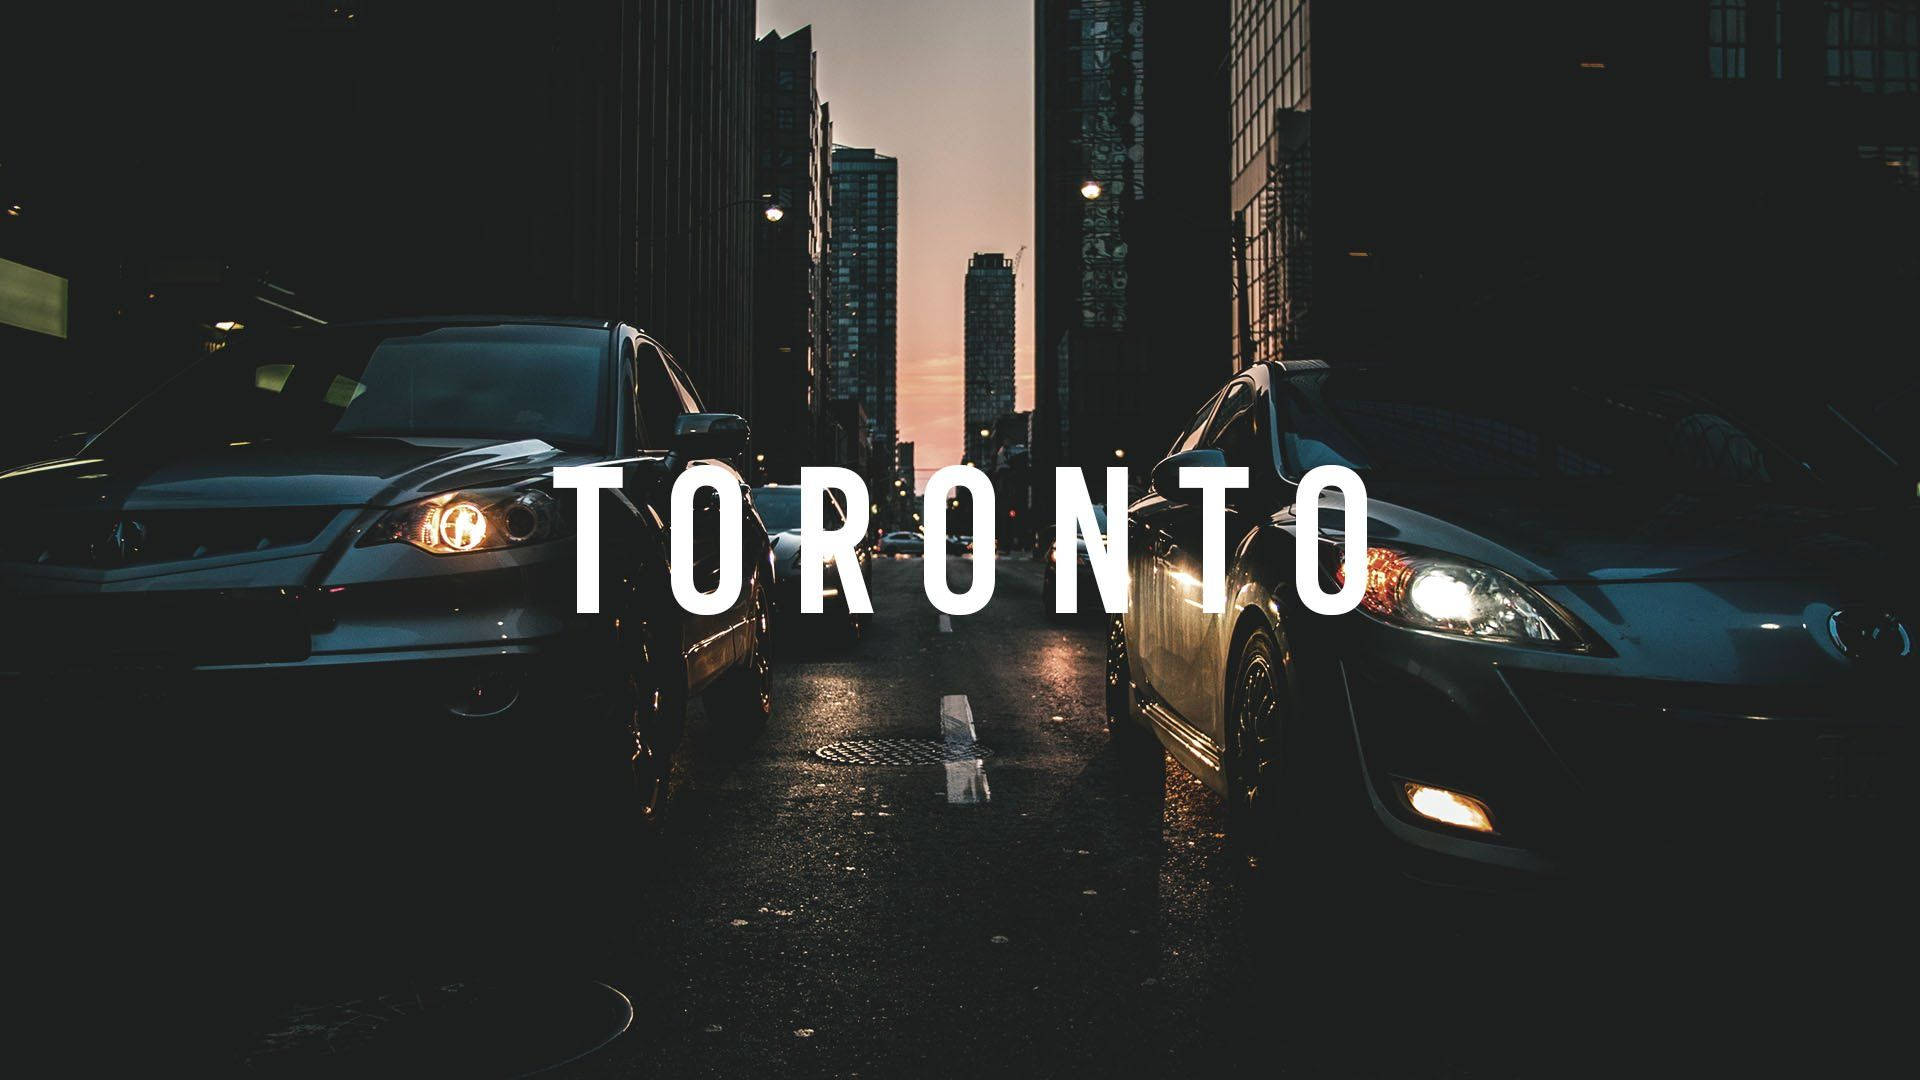 En digital plakat af Torontos skyline Wallpaper